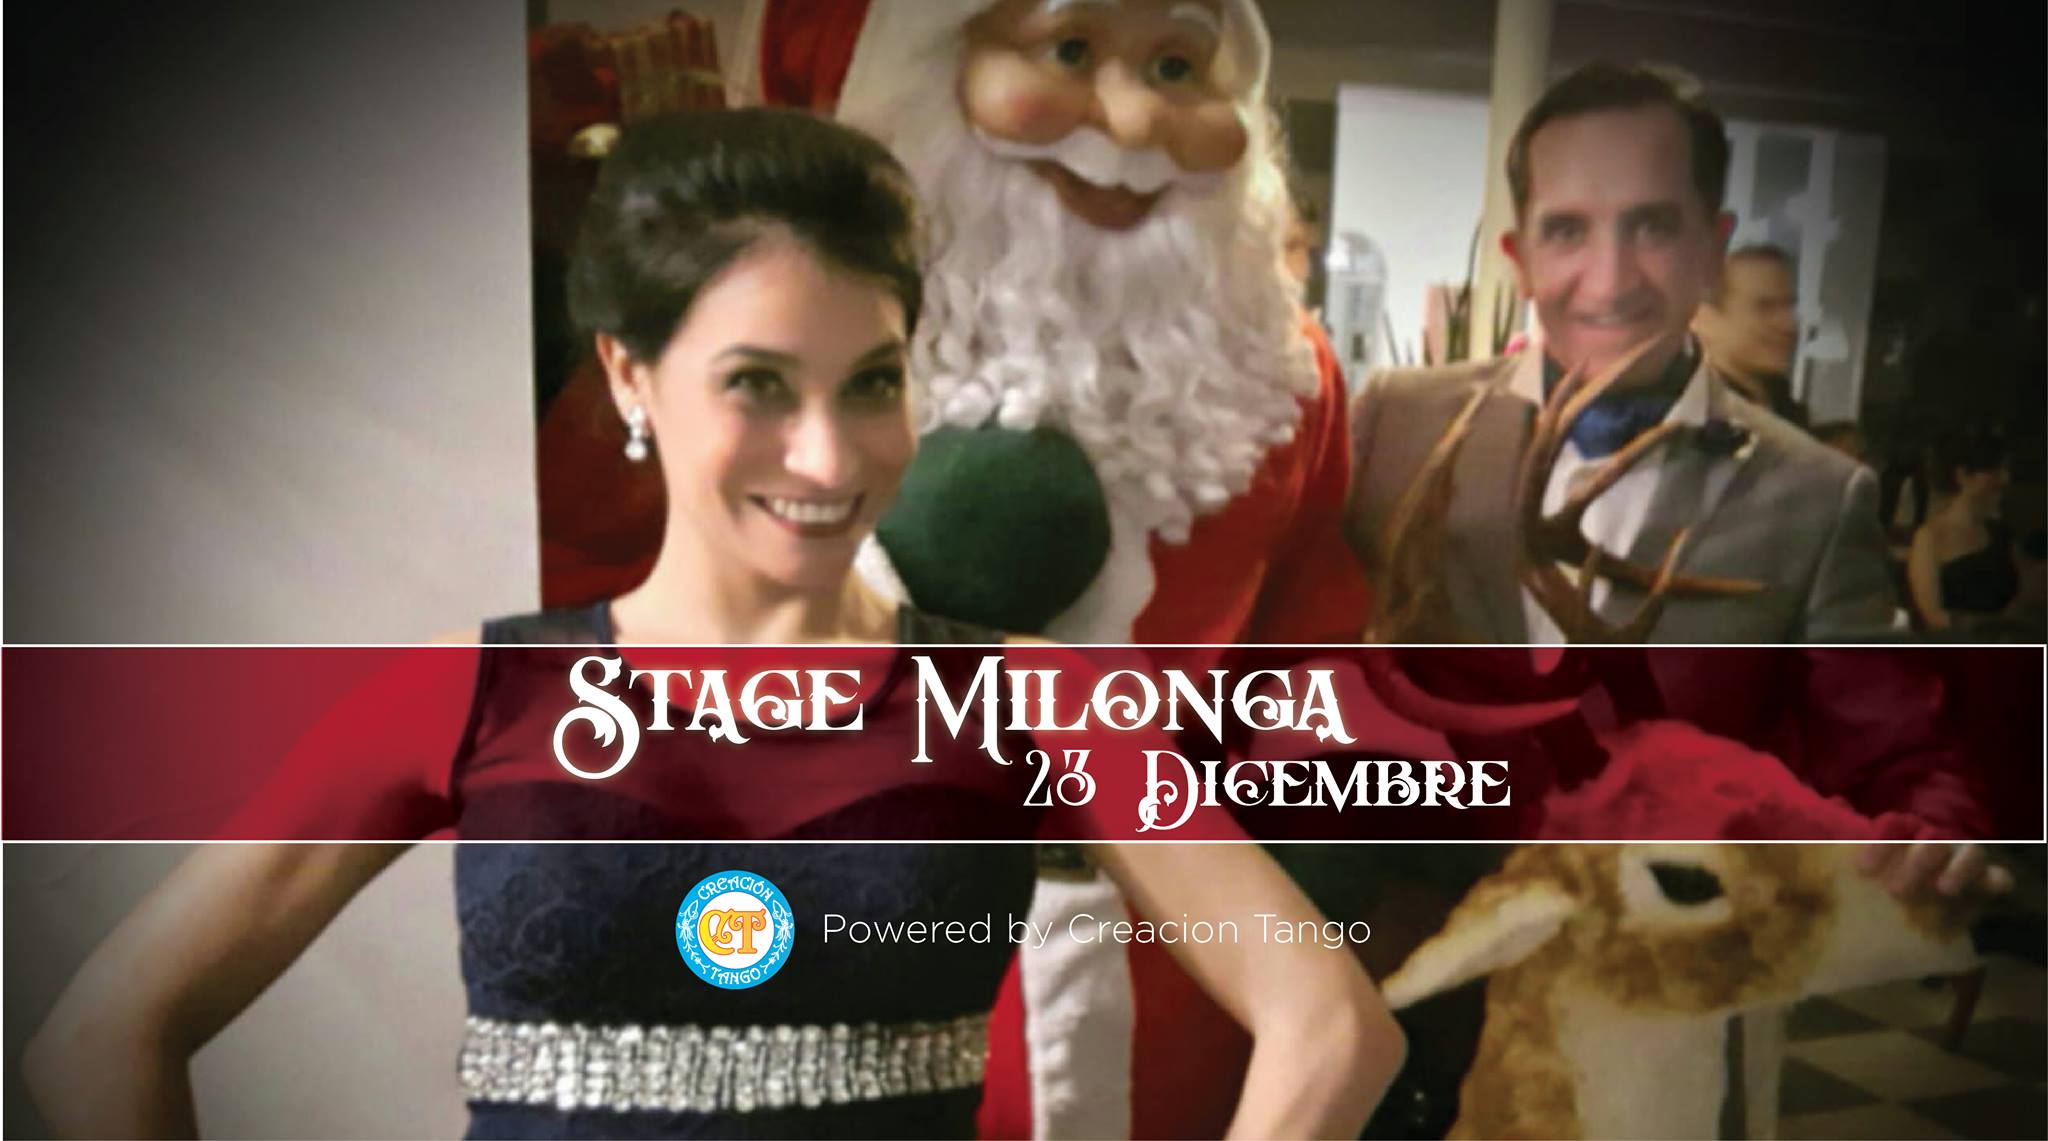 Stage Milonga Creacion Tango